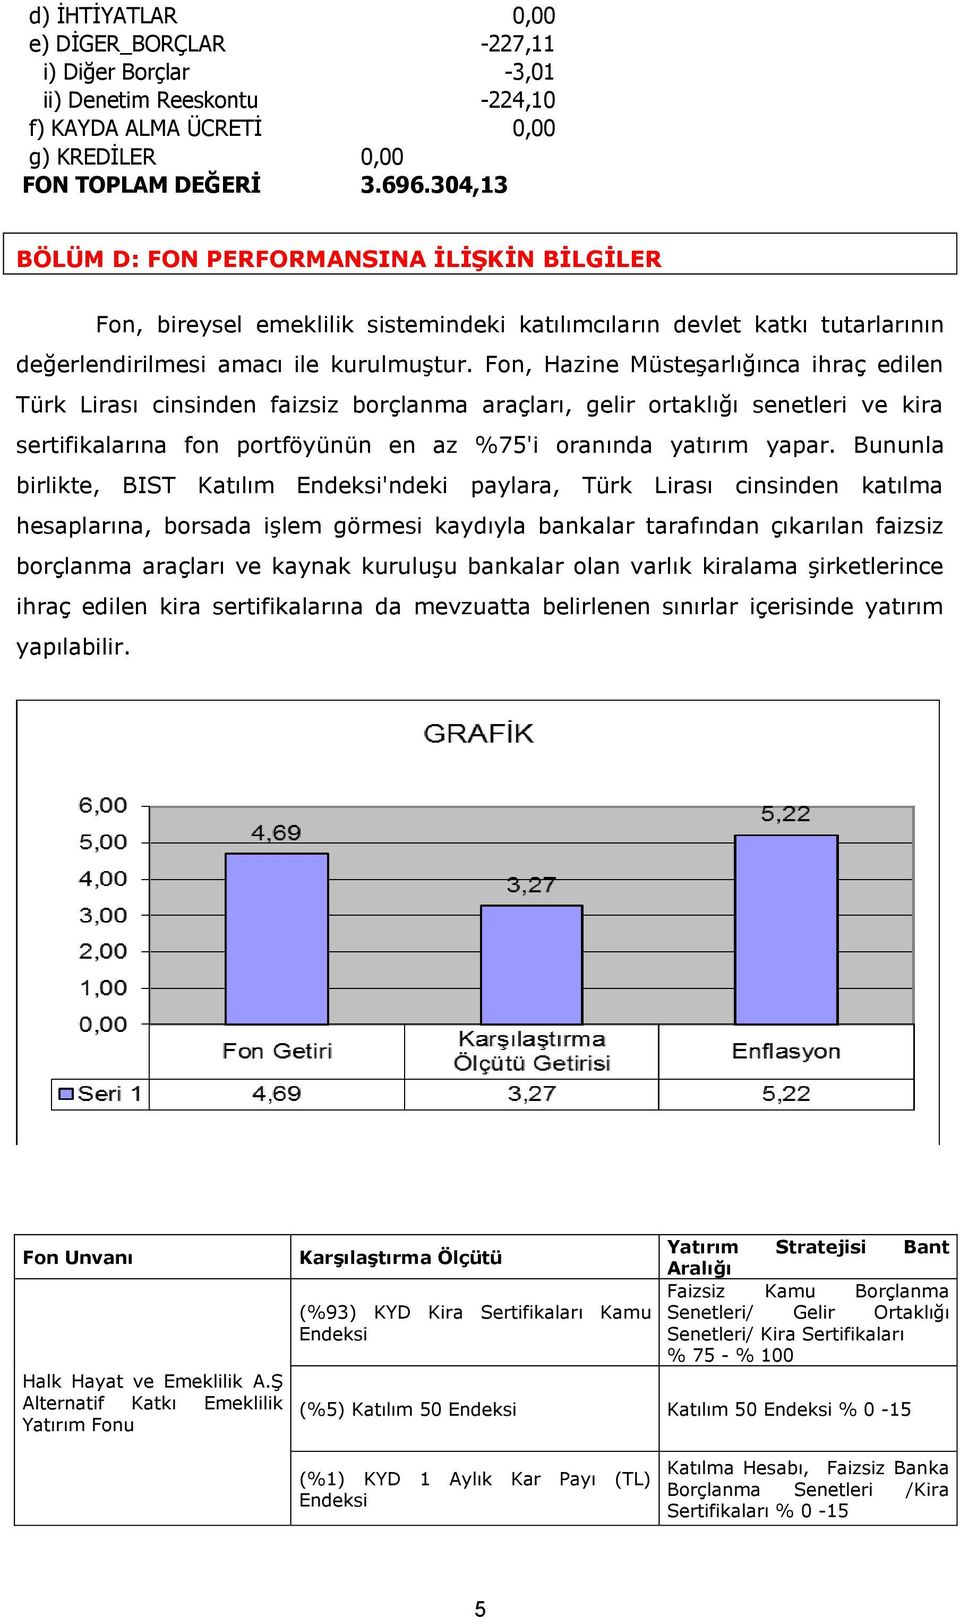 Fon, Hazine Müsteşarlığınca ihraç edilen Türk Lirası cinsinden faizsiz borçlanma araçları, gelir ortaklığı senetleri ve kira sertifikalarına fon portföyünün en az %75'i oranında yatırım yapar.